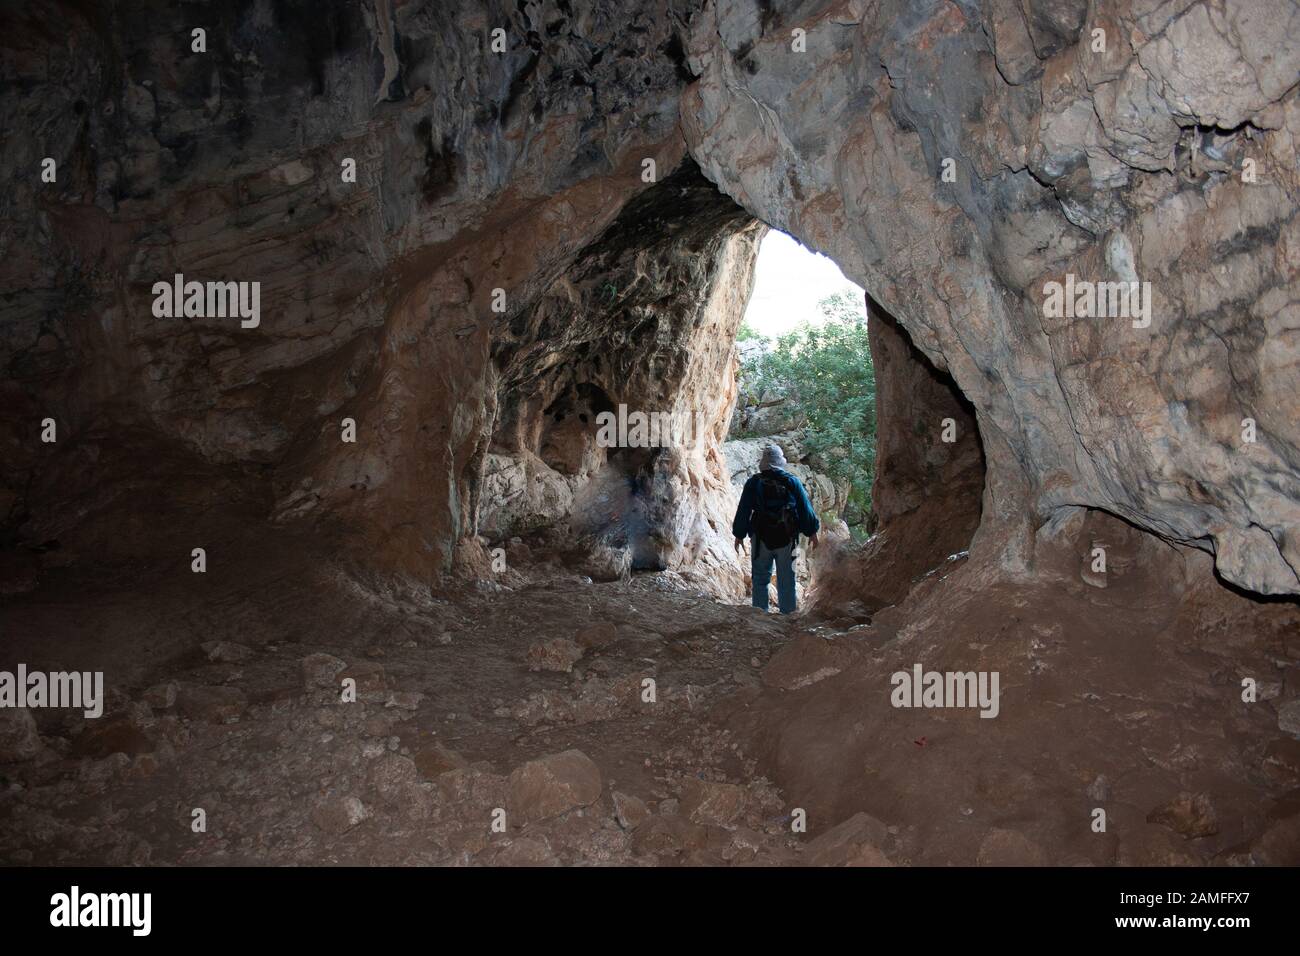 Un gruppo di persone esplora una grotta. Fotografato nella catena montuosa del Carmelo, Israele Foto Stock